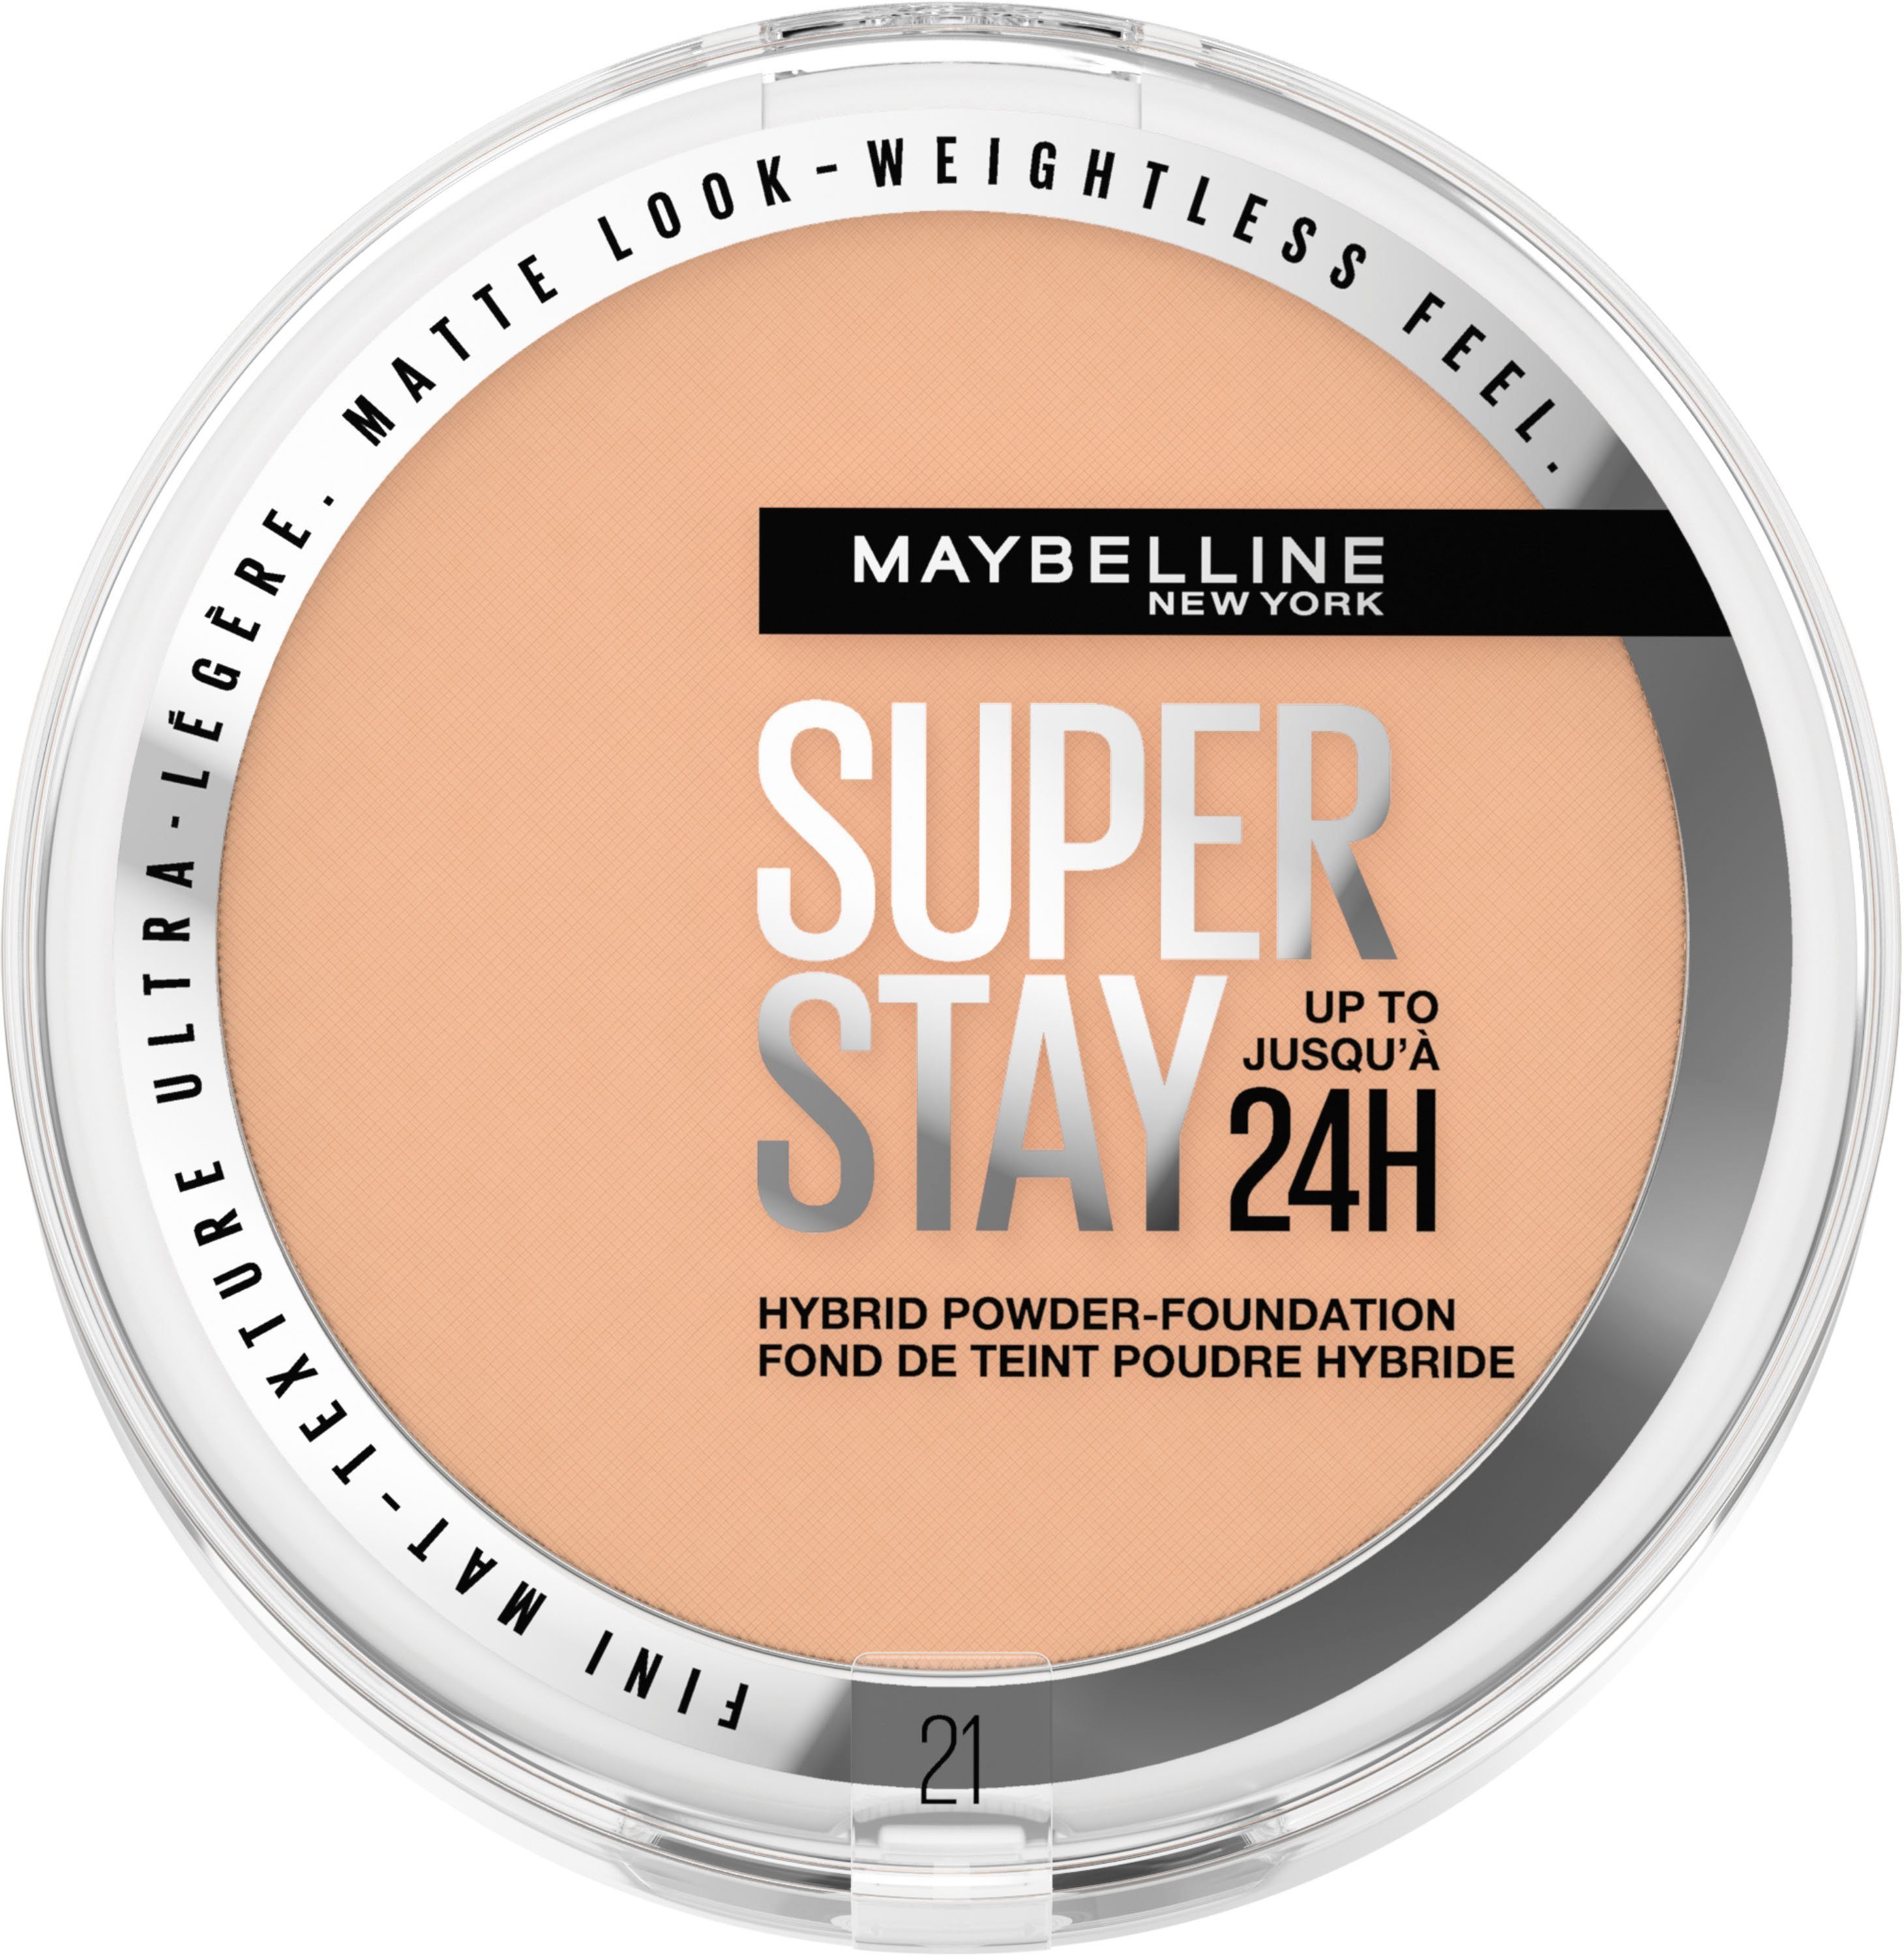 Extrem beliebt zu günstigen Preisen MAYBELLINE NEW YORK York Maybelline New Hybrides Foundation Puder Stay Make-Up Super